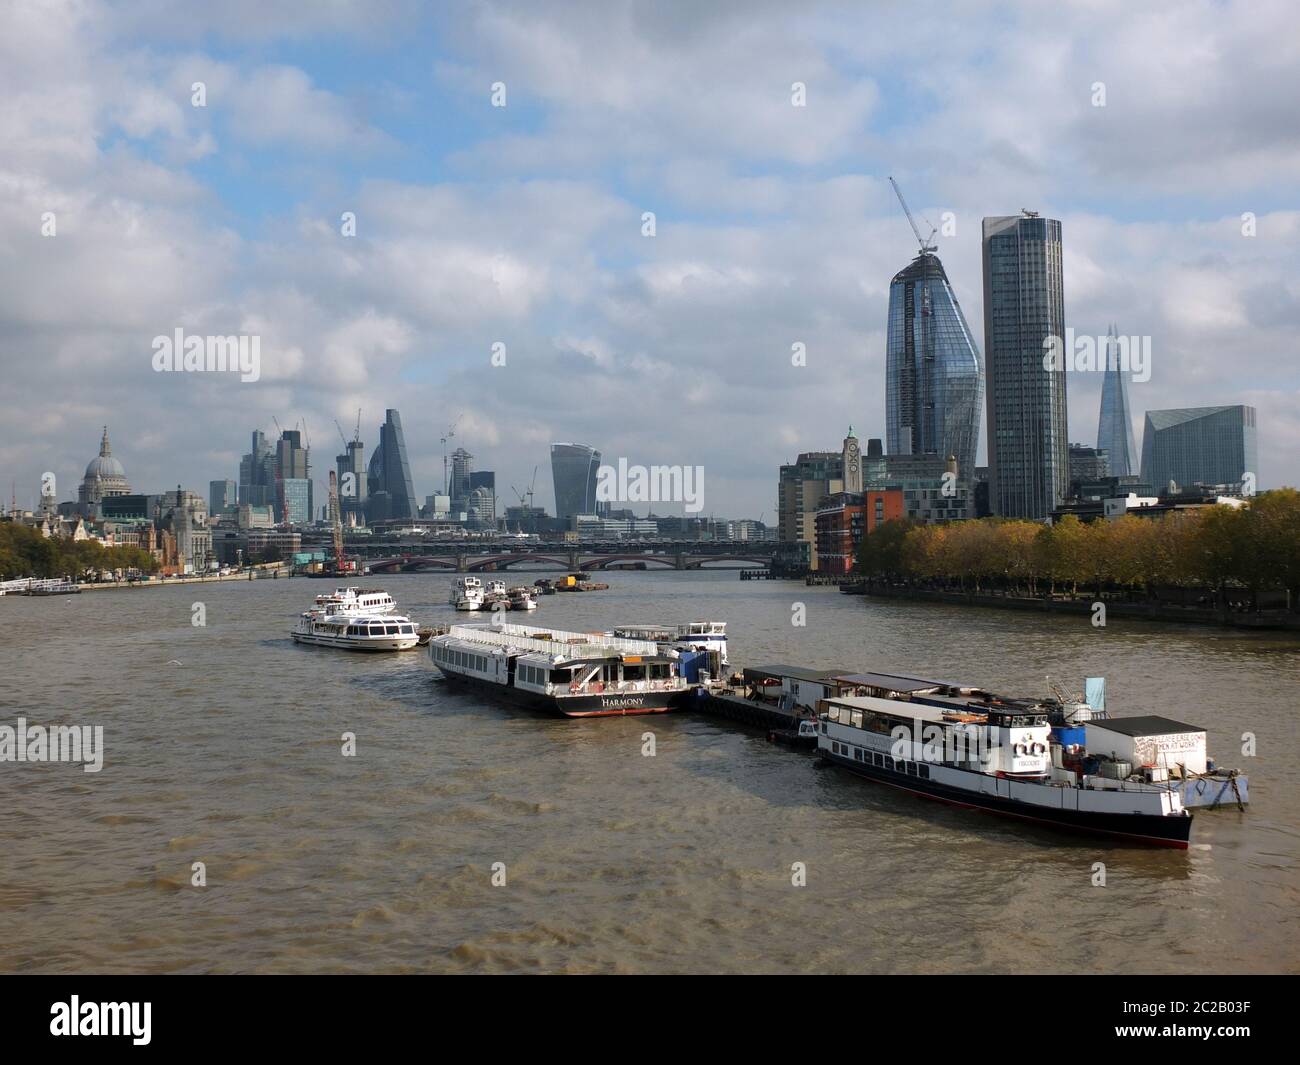 London, England - 03. November 2017: Die Stadt london und neue Gebäude am Südufer zeigen aktuelle Bauarbeiten, w Stockfoto